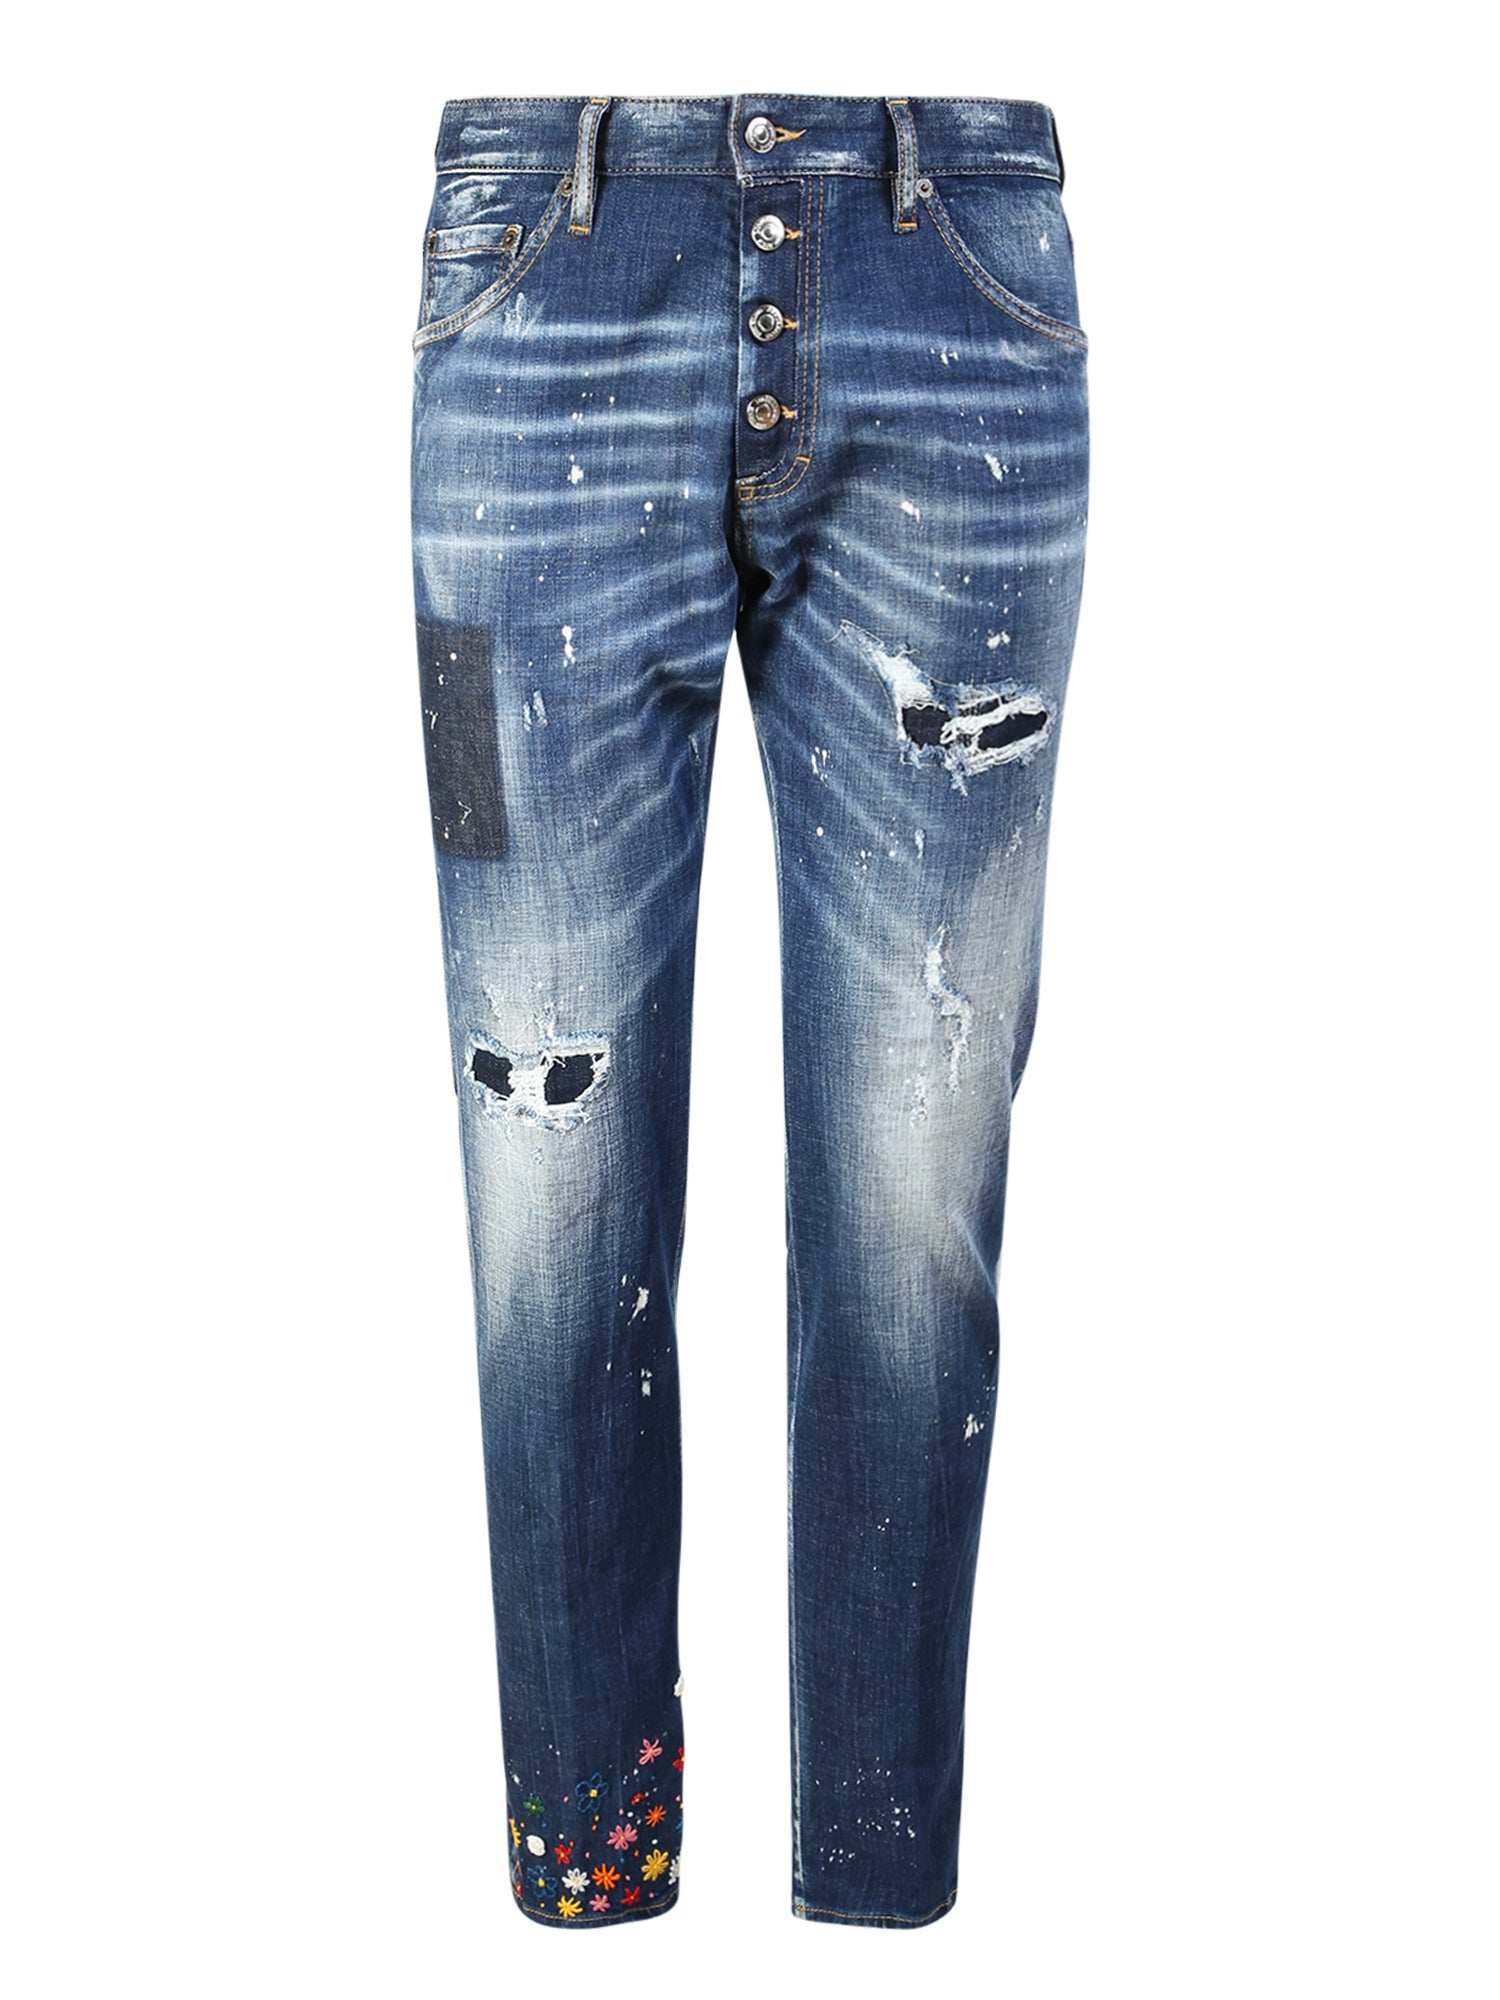 Ditsy jeans by Dsquared2; denim garment par excellence of the maison ...